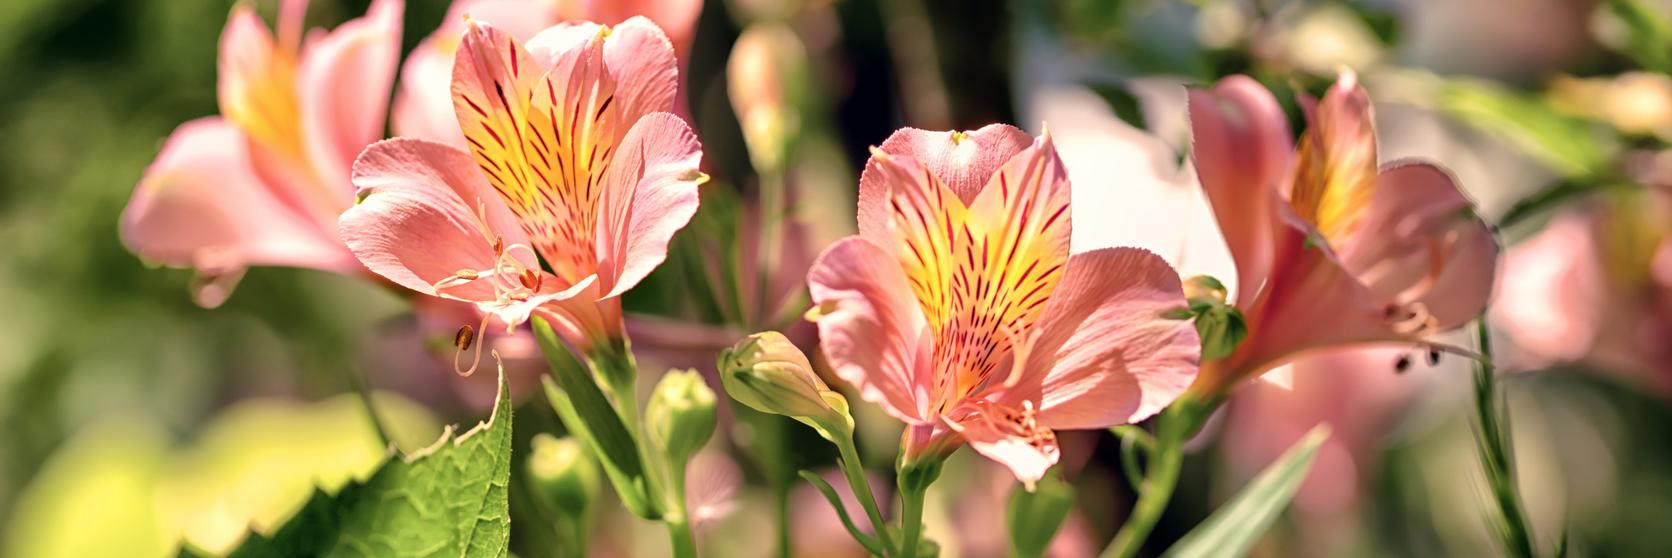 alstromeria-pink-flower